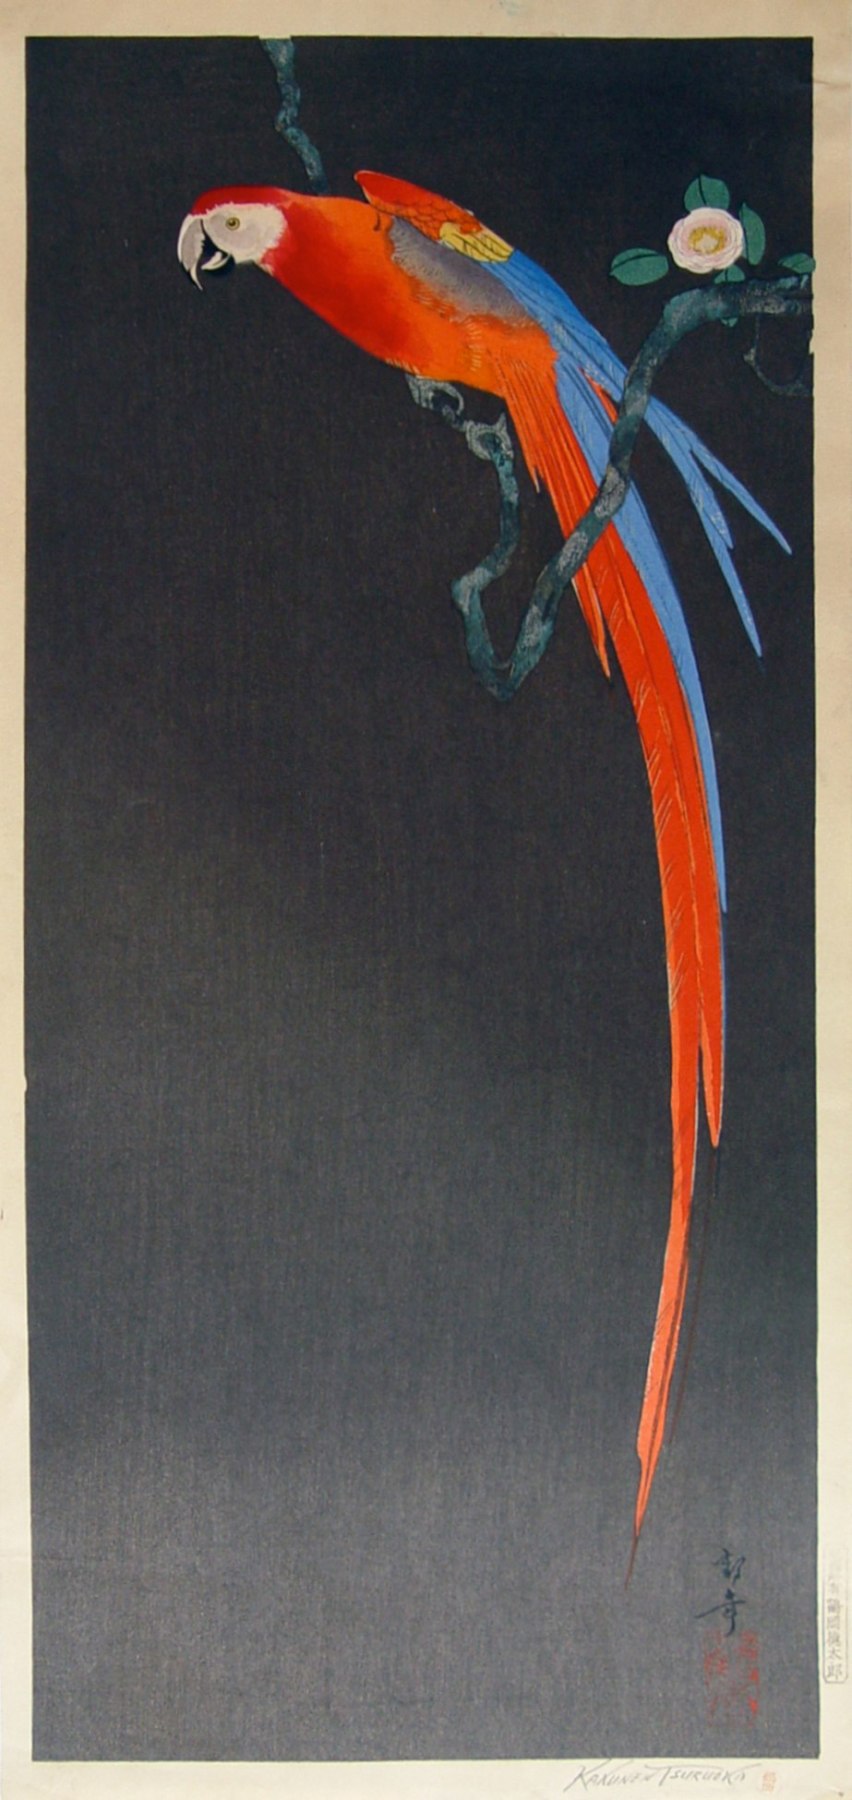 Tsuruoka Kakunen (1892-1977), Parrot on flowering branch